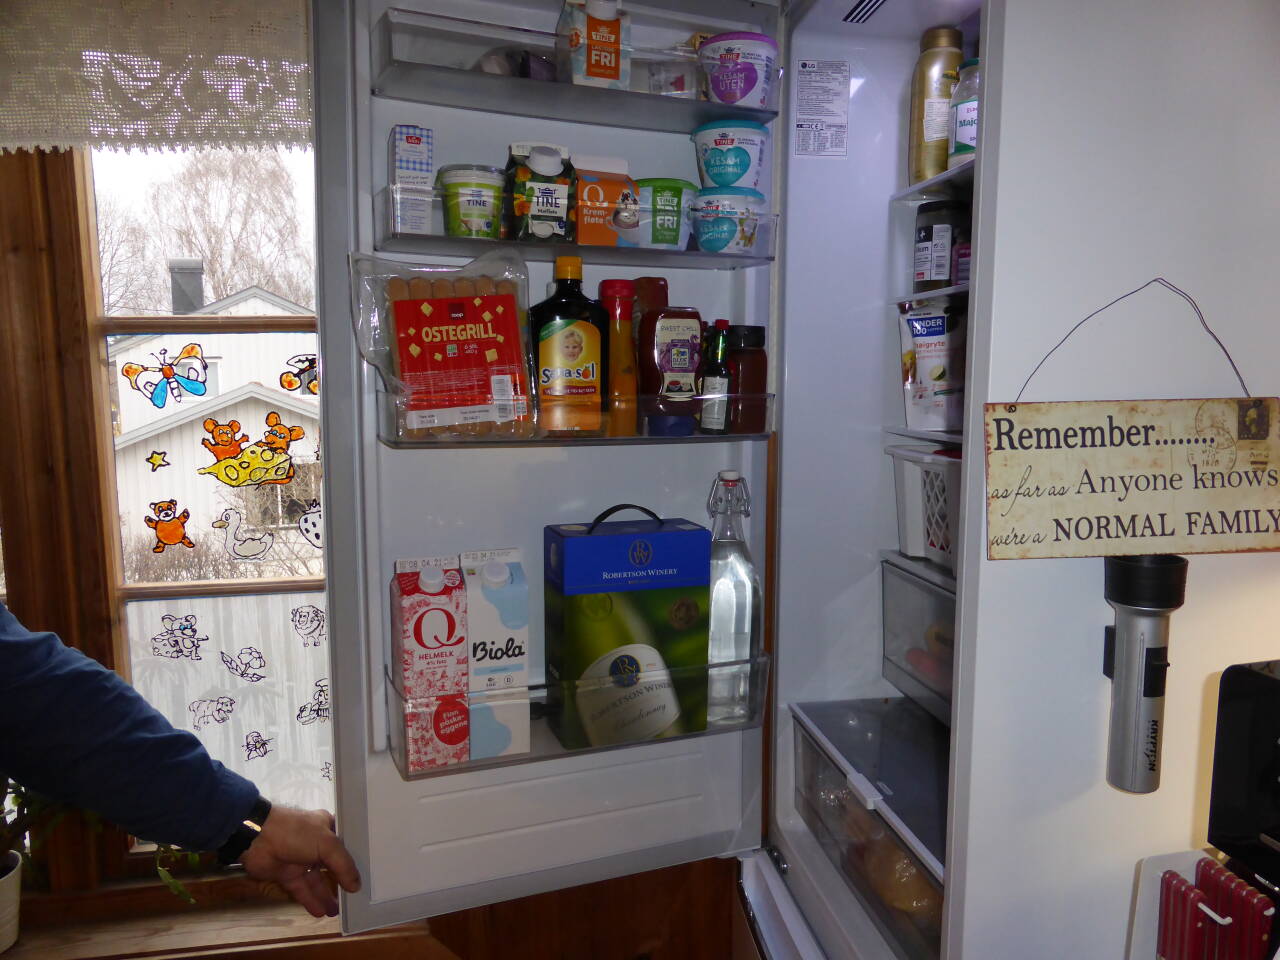 Har du oversikt over hva du har i kjøleskapet, fryseren og spiskammerset, så kan du redusere matkastingen og øke matbudsjettet, noe som kommer godt med i disse tider.Illustrasjonsfoto: Berit Keilen / NTB